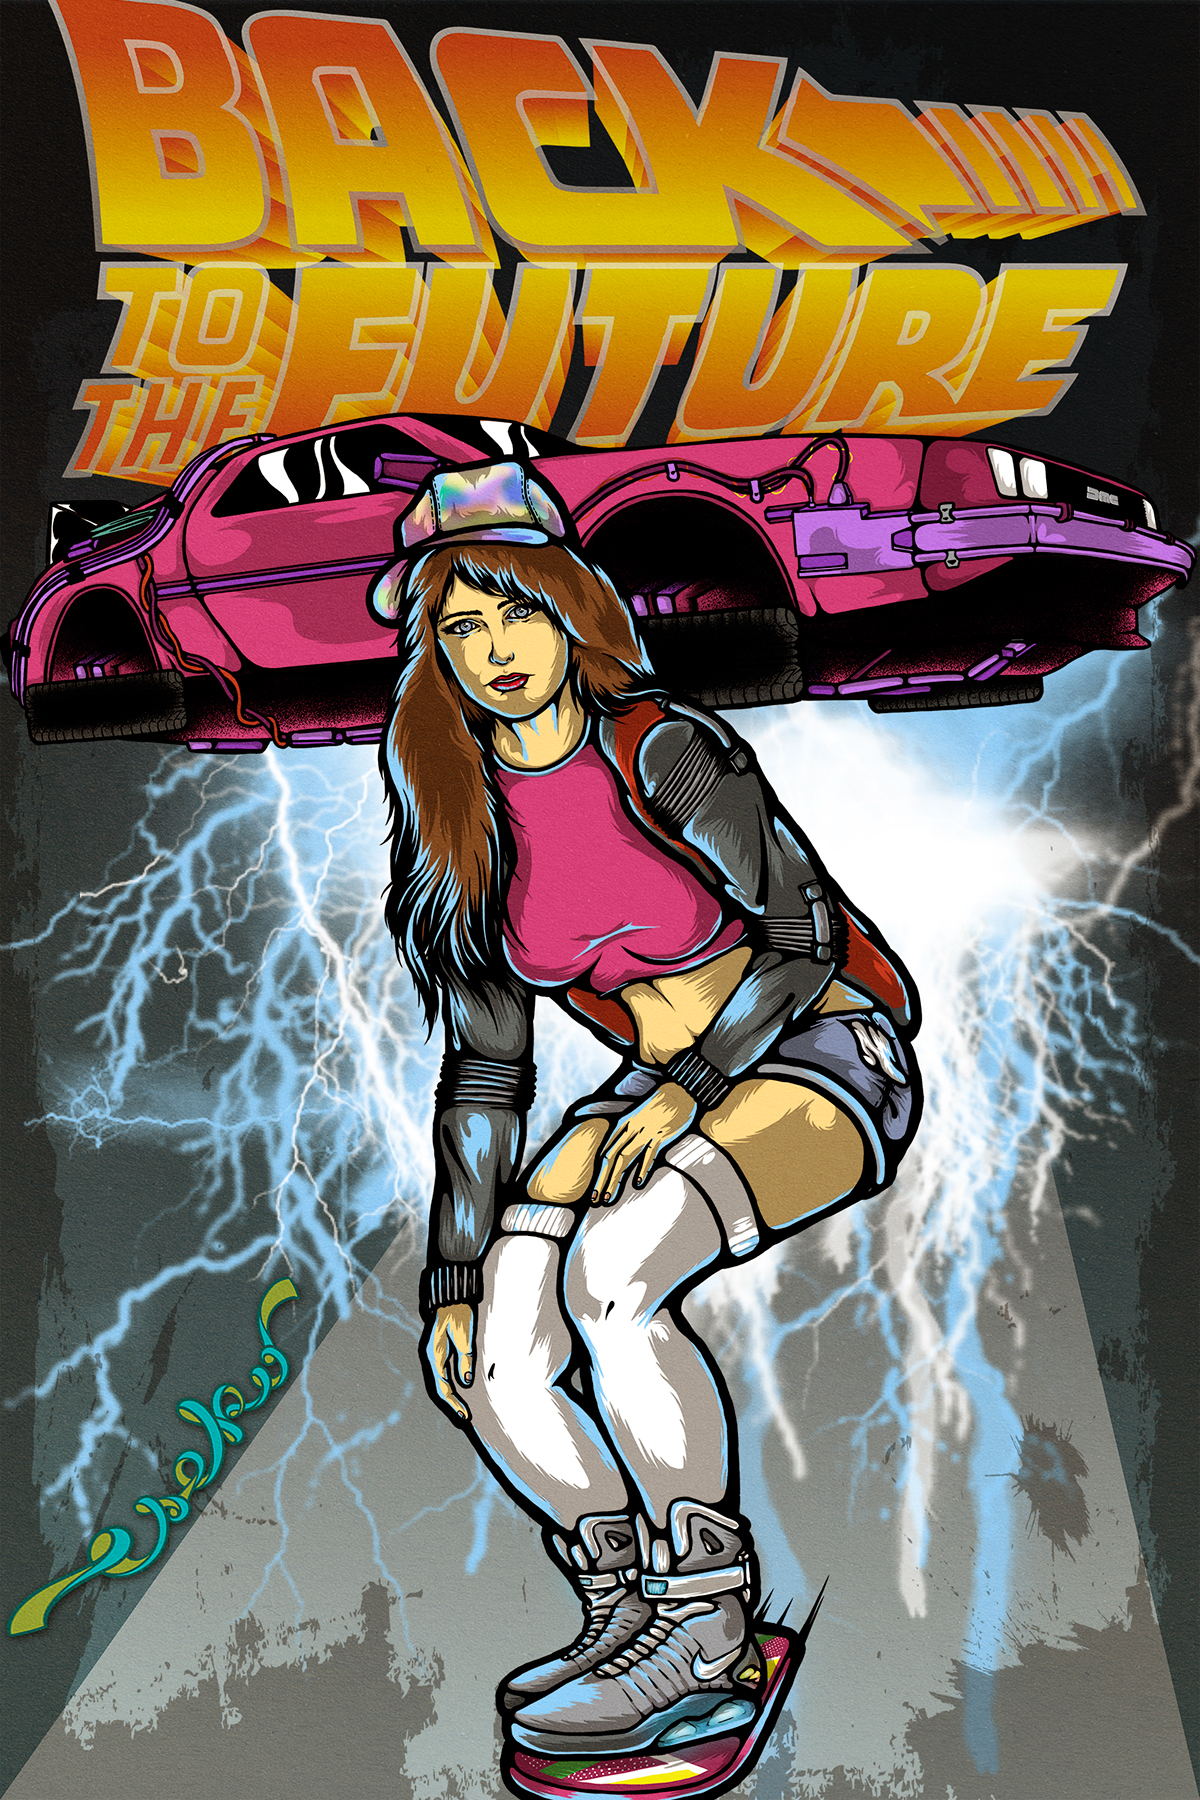 ilustracion Fan Art design future movie wacom DeLorean skate